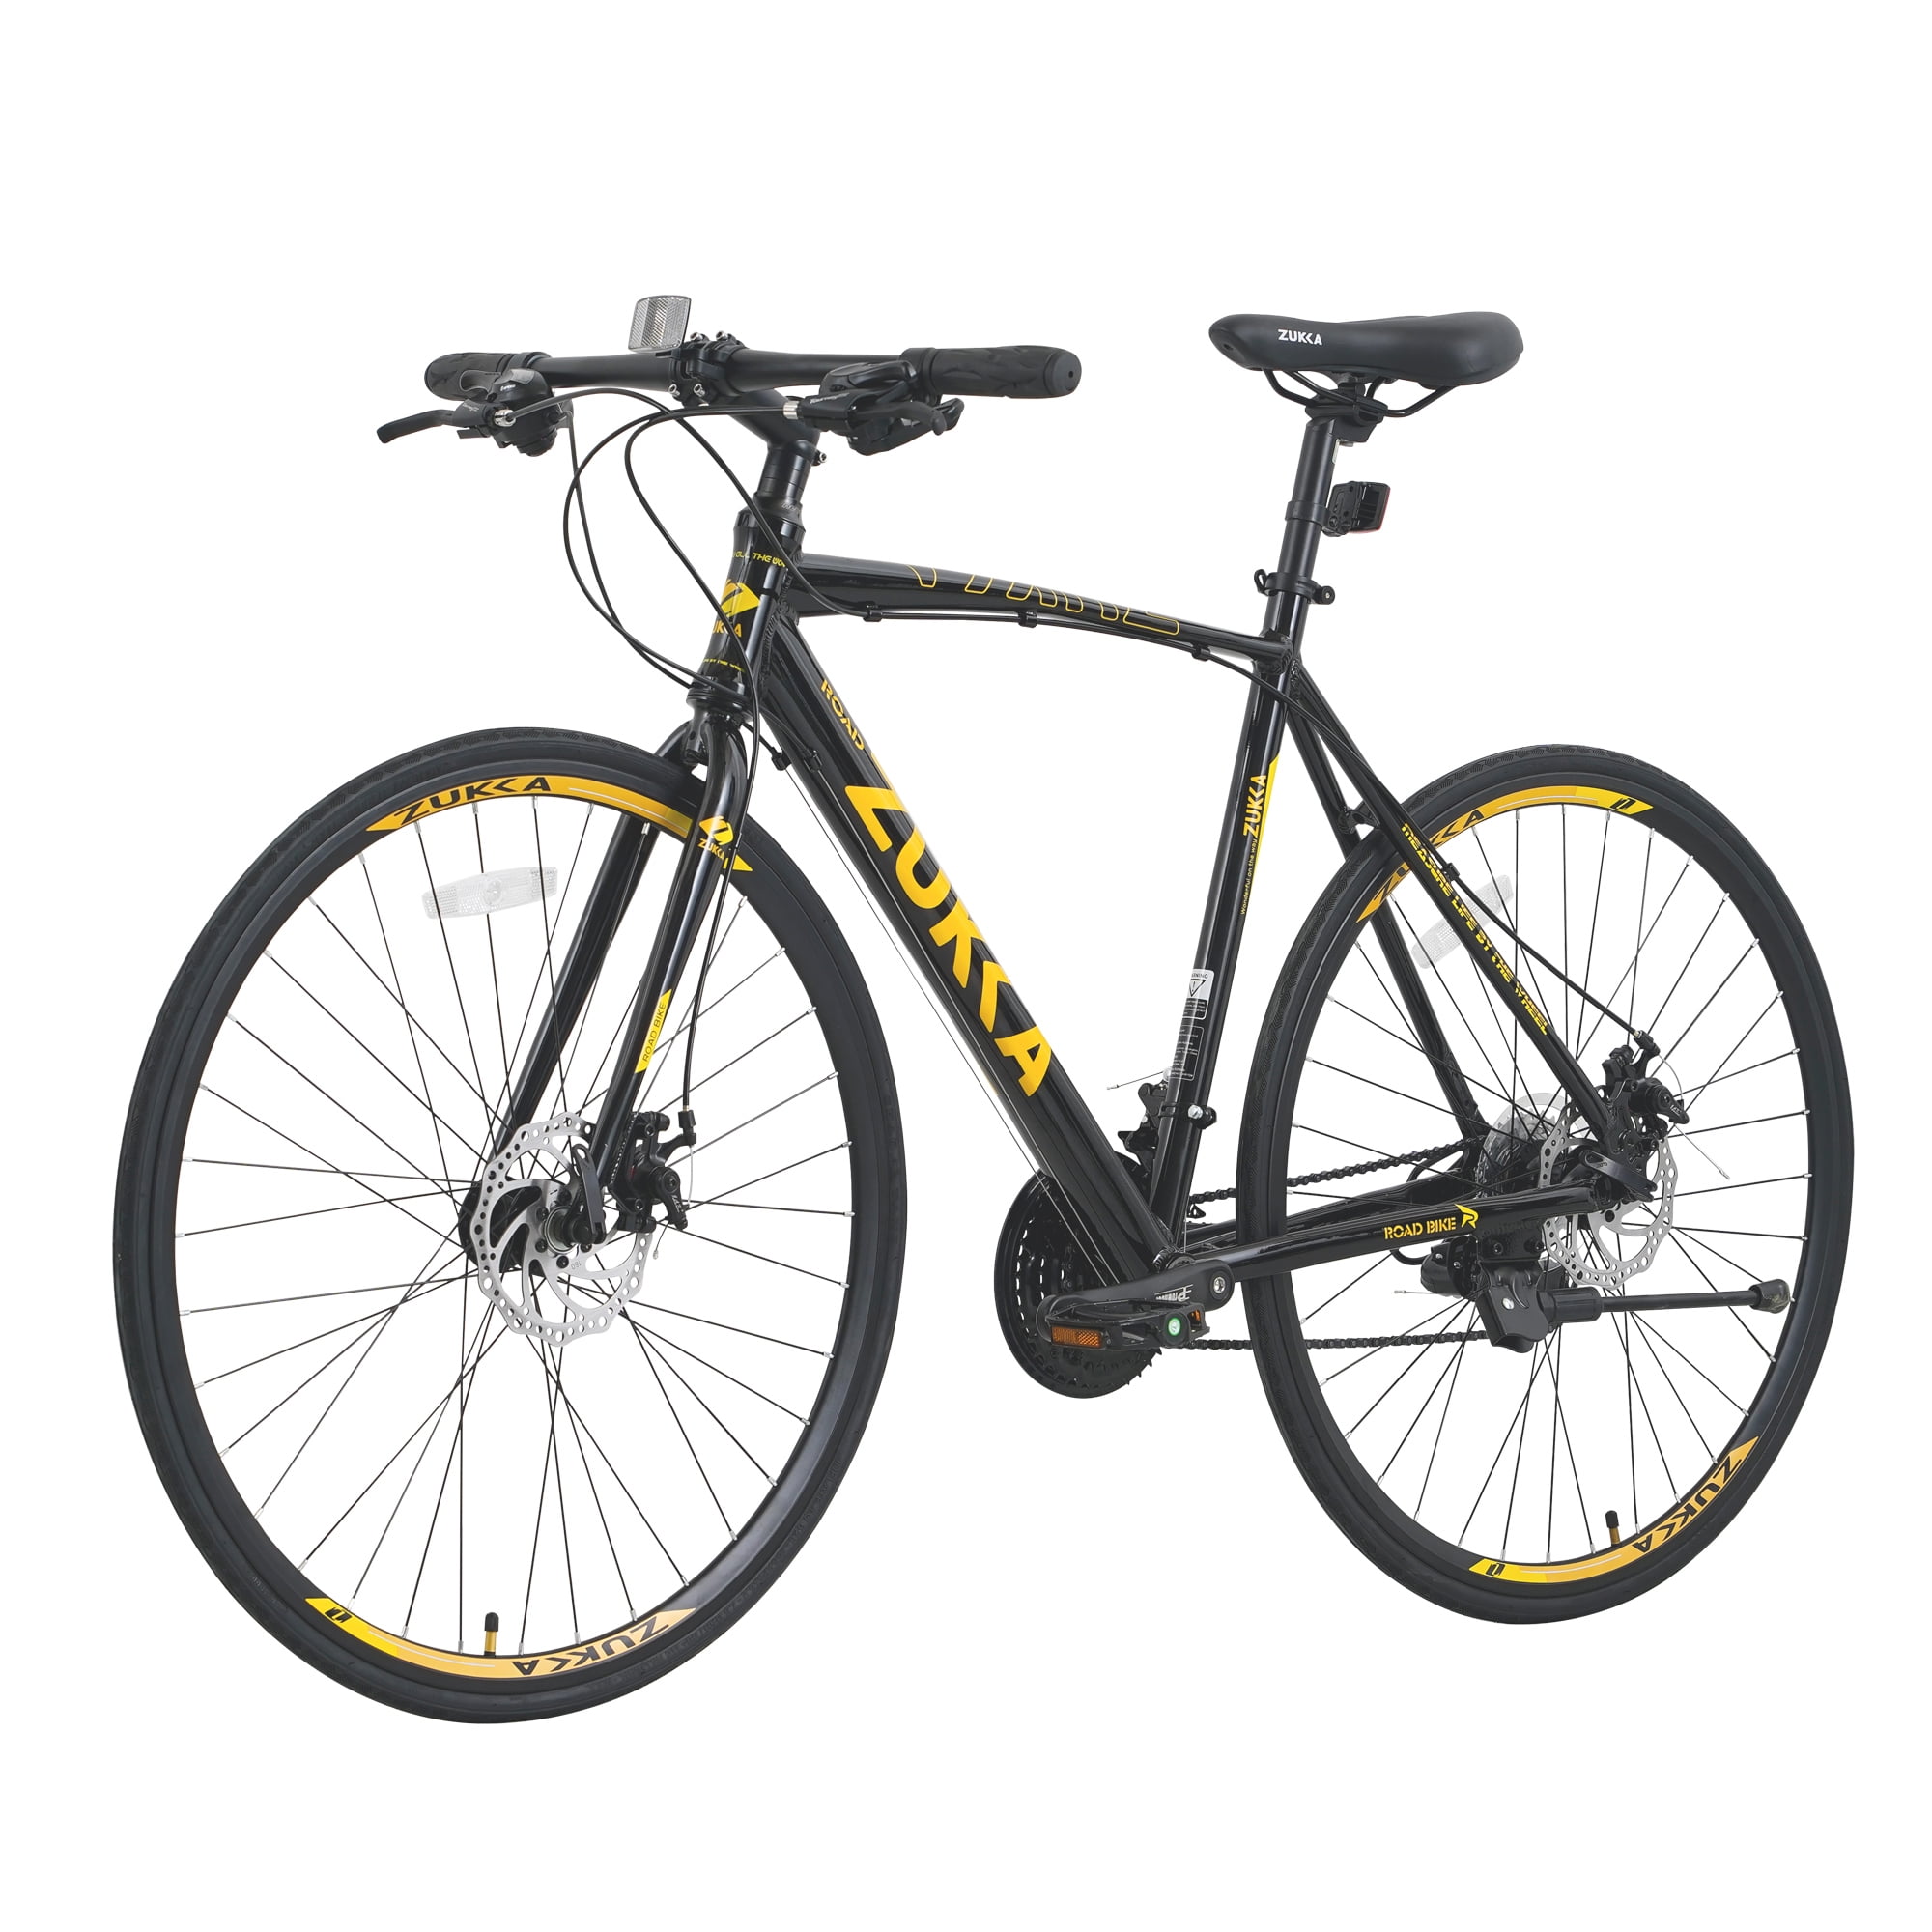 Zukka Road Bike 700C 24 Speed Aluminum Alloy Frame Bicycle for Unisex Adult Hybrid Bike Black - image 1 of 6